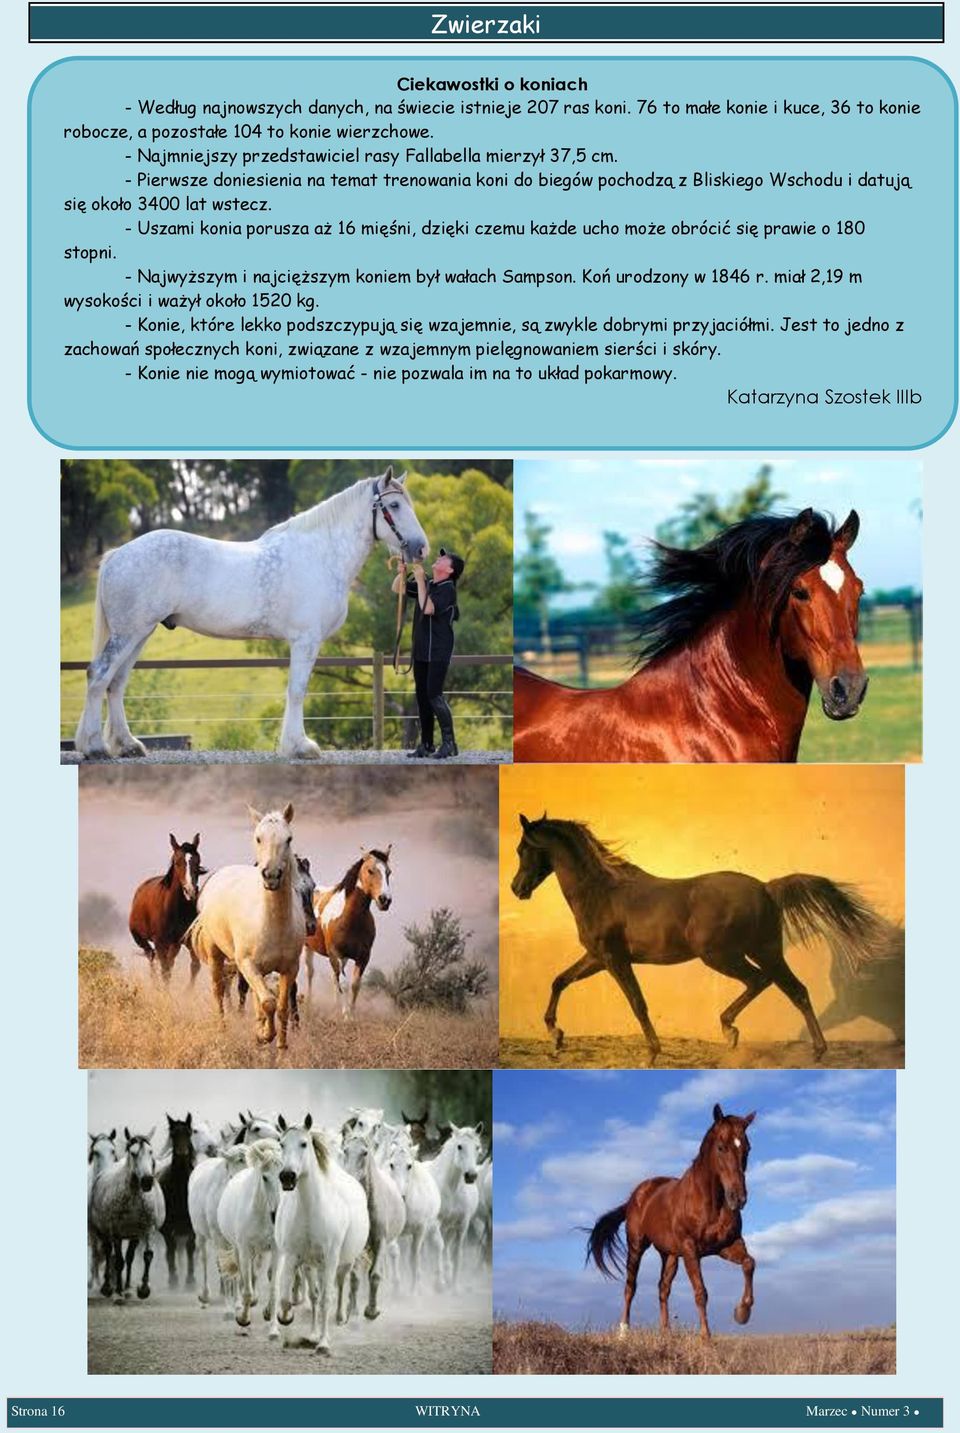 - Pierwsze doniesienia na temat trenowania koni do biegów pochodzą z Bliskiego Wschodu i datują się około 3400 lat wstecz.